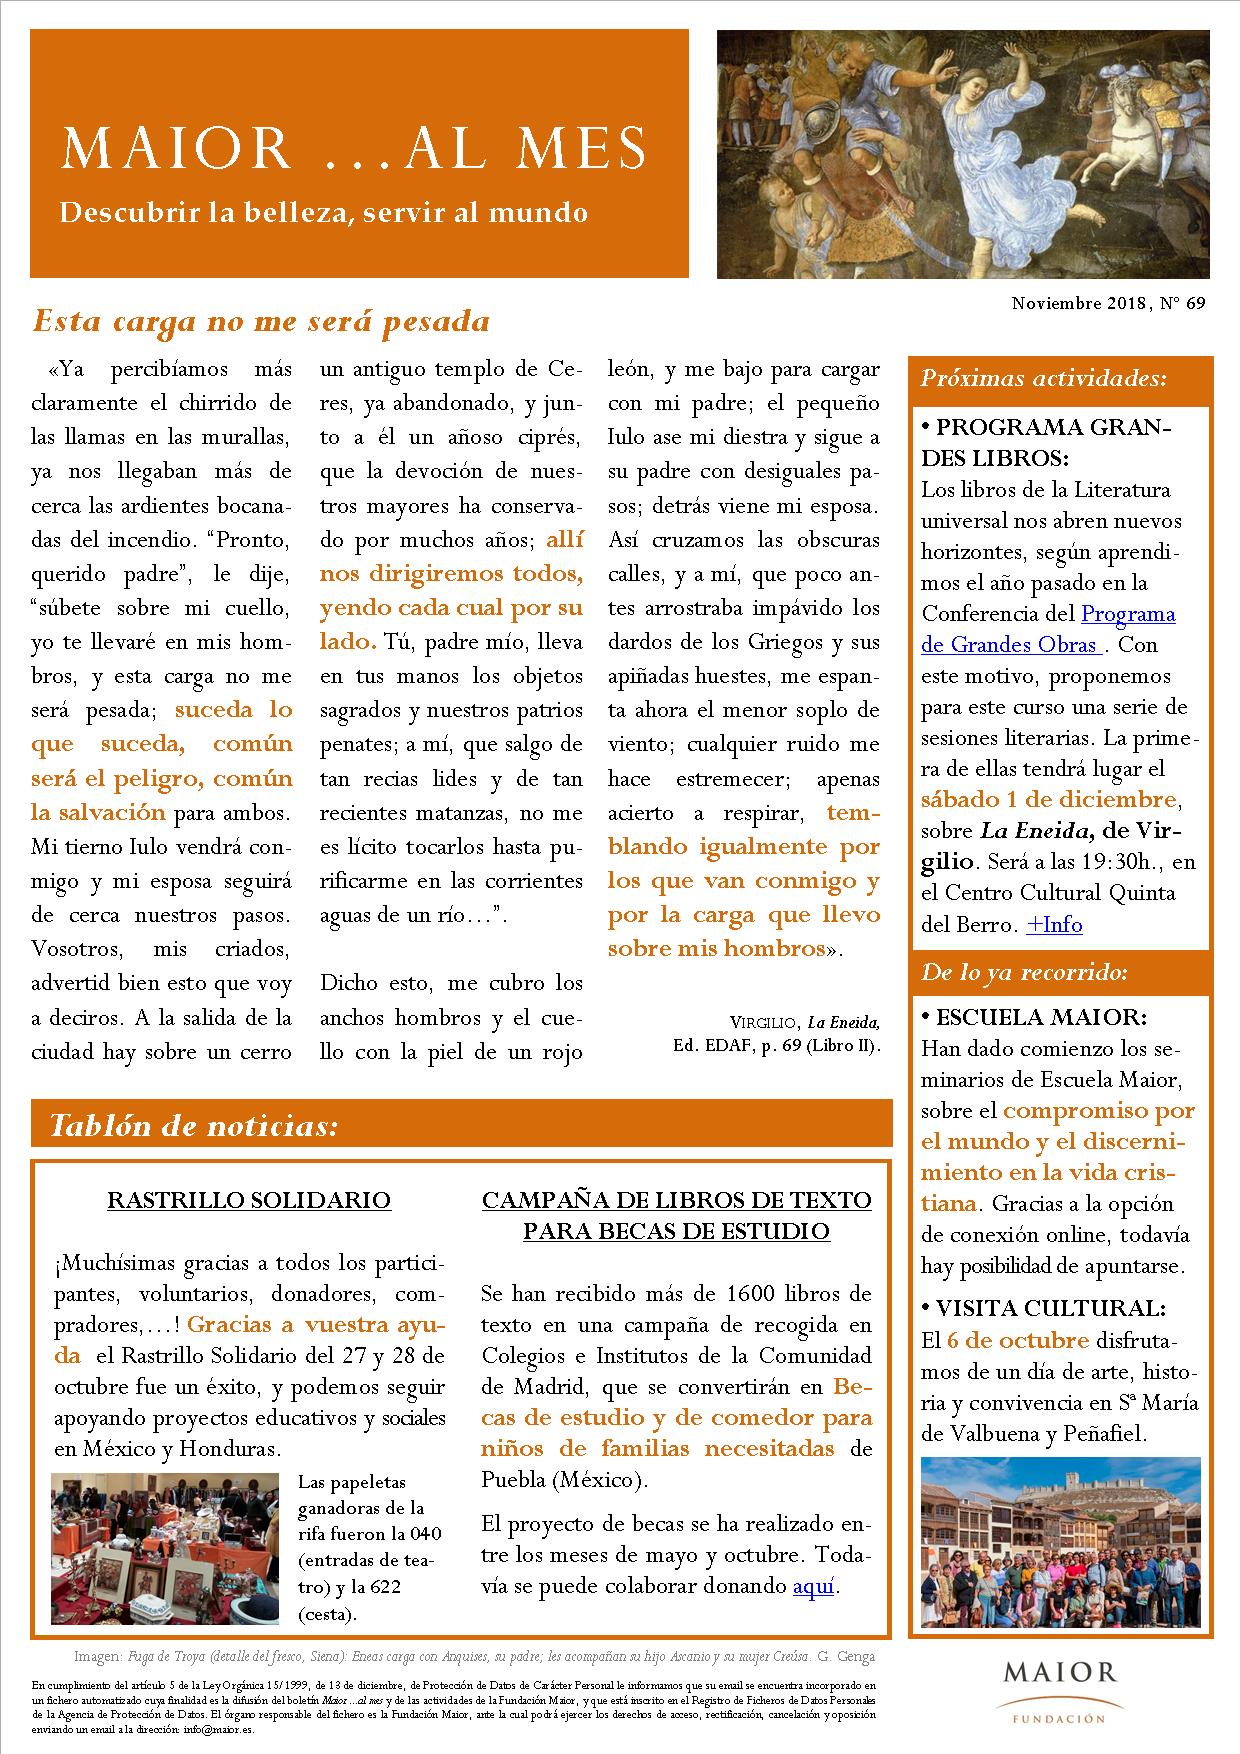 Boletín mensual de noticias y actividades de la Fundación Maior. Edición de noviembre 2018